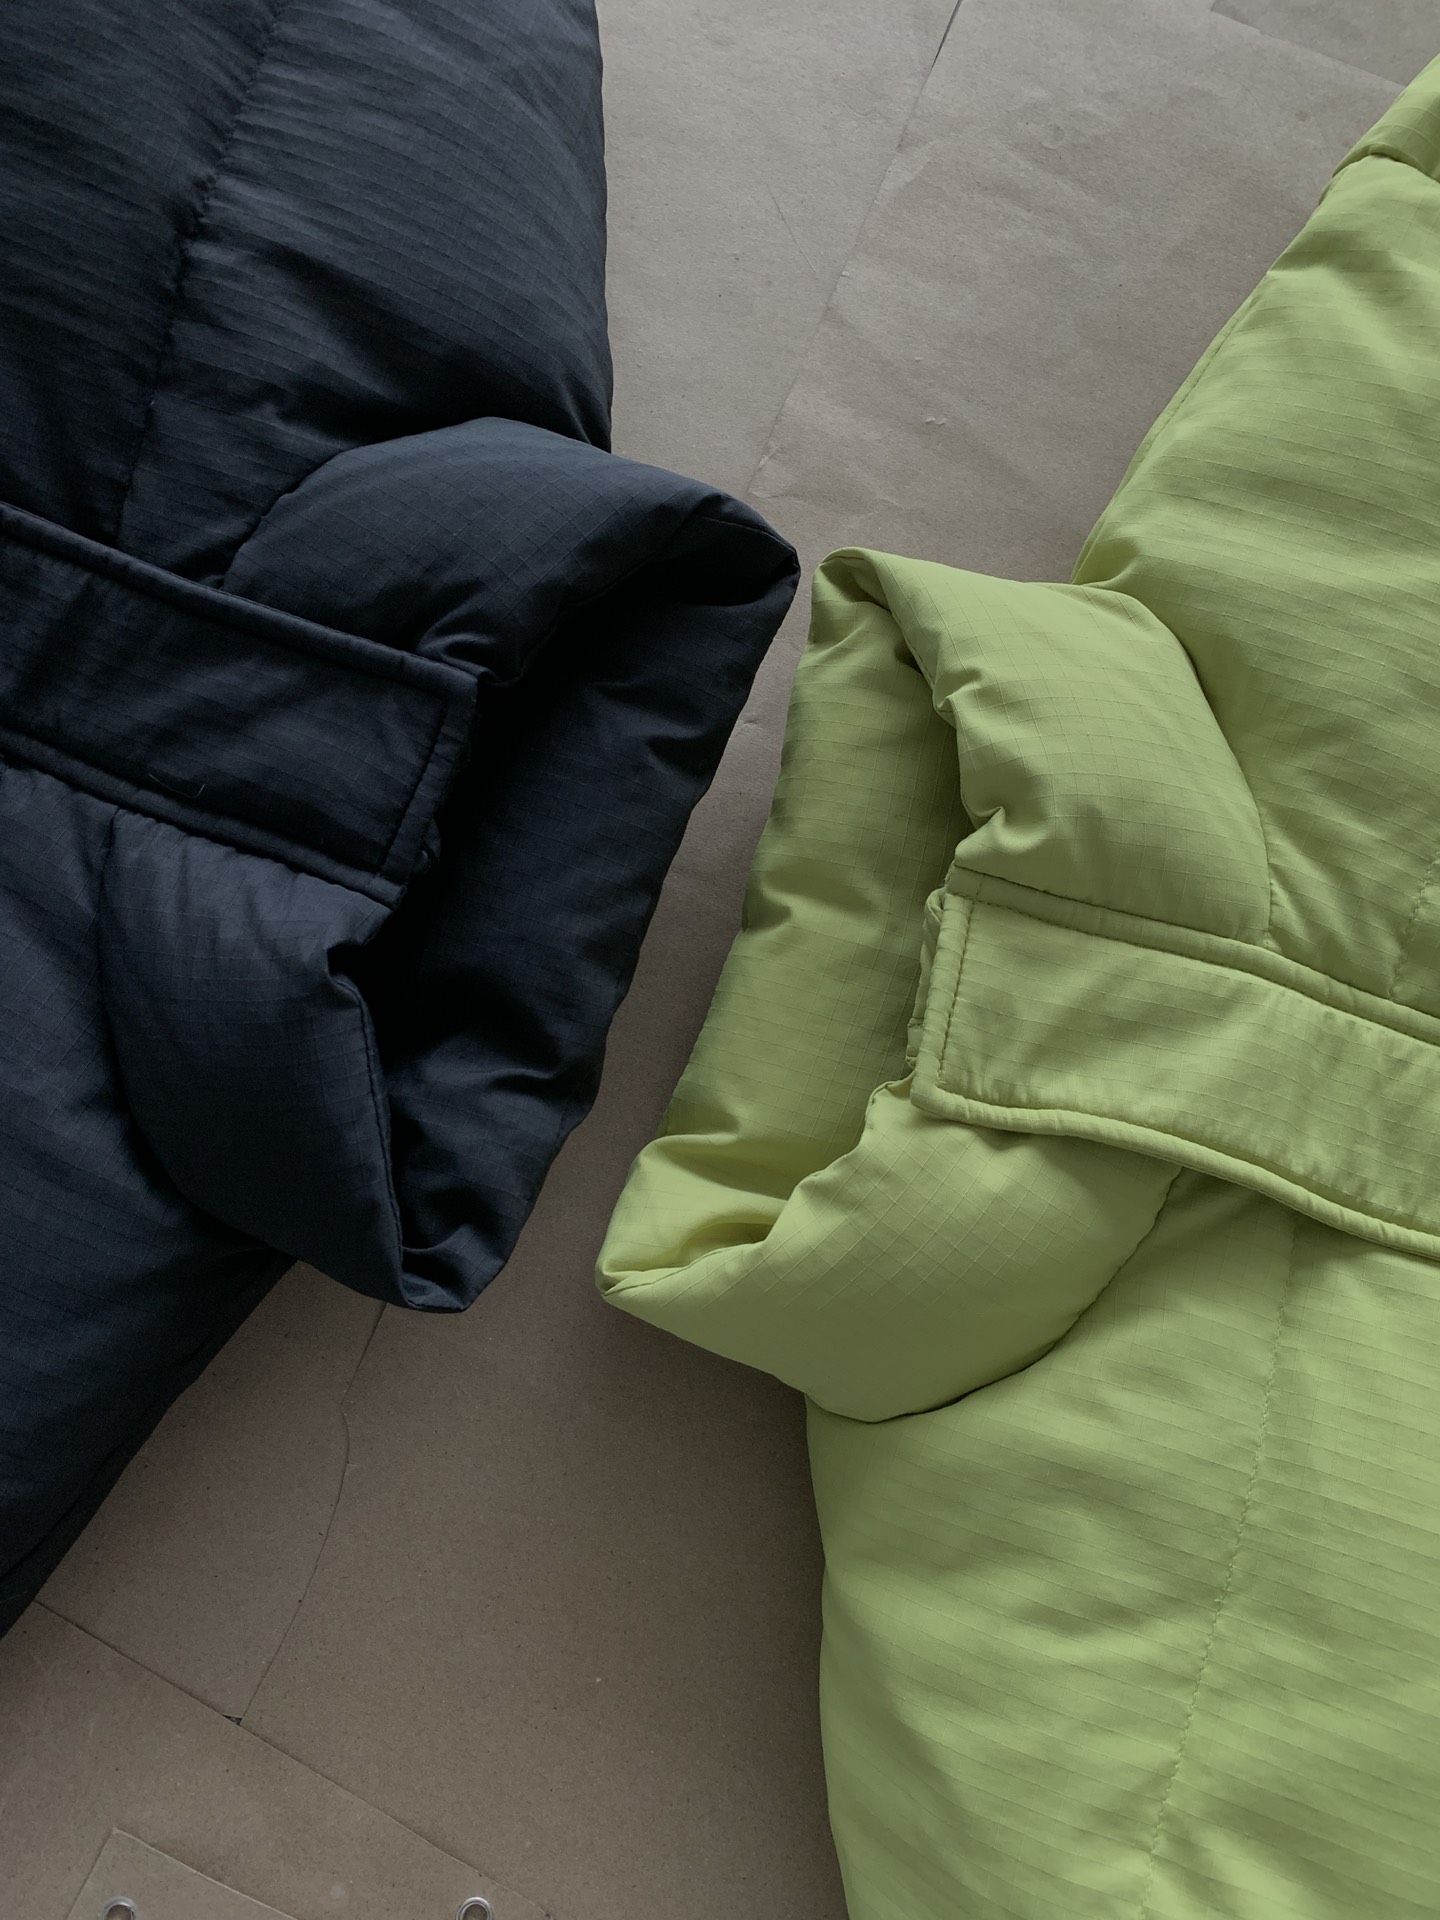 ステューシーダウンジャケット激安通販 厚いトップス 暖かくて柔らかい 防風 シンプル 4色可選_12